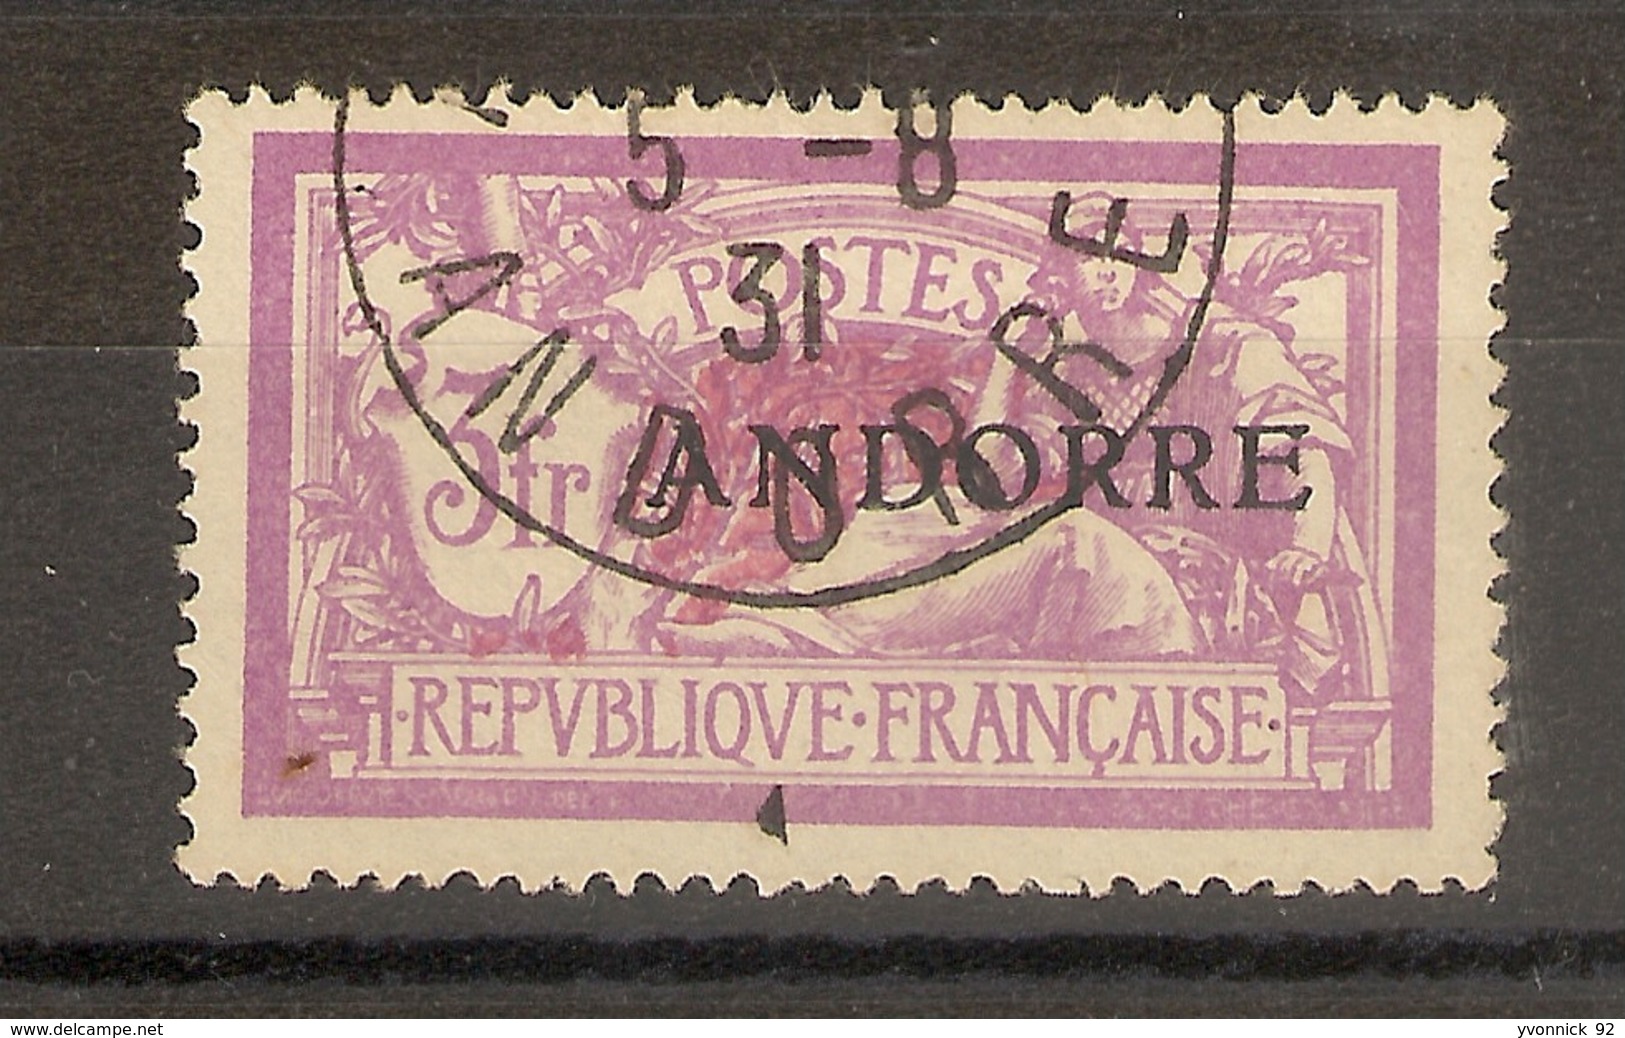 Andorre - 1931- 3F Mersonl N°20 - Oblitérés